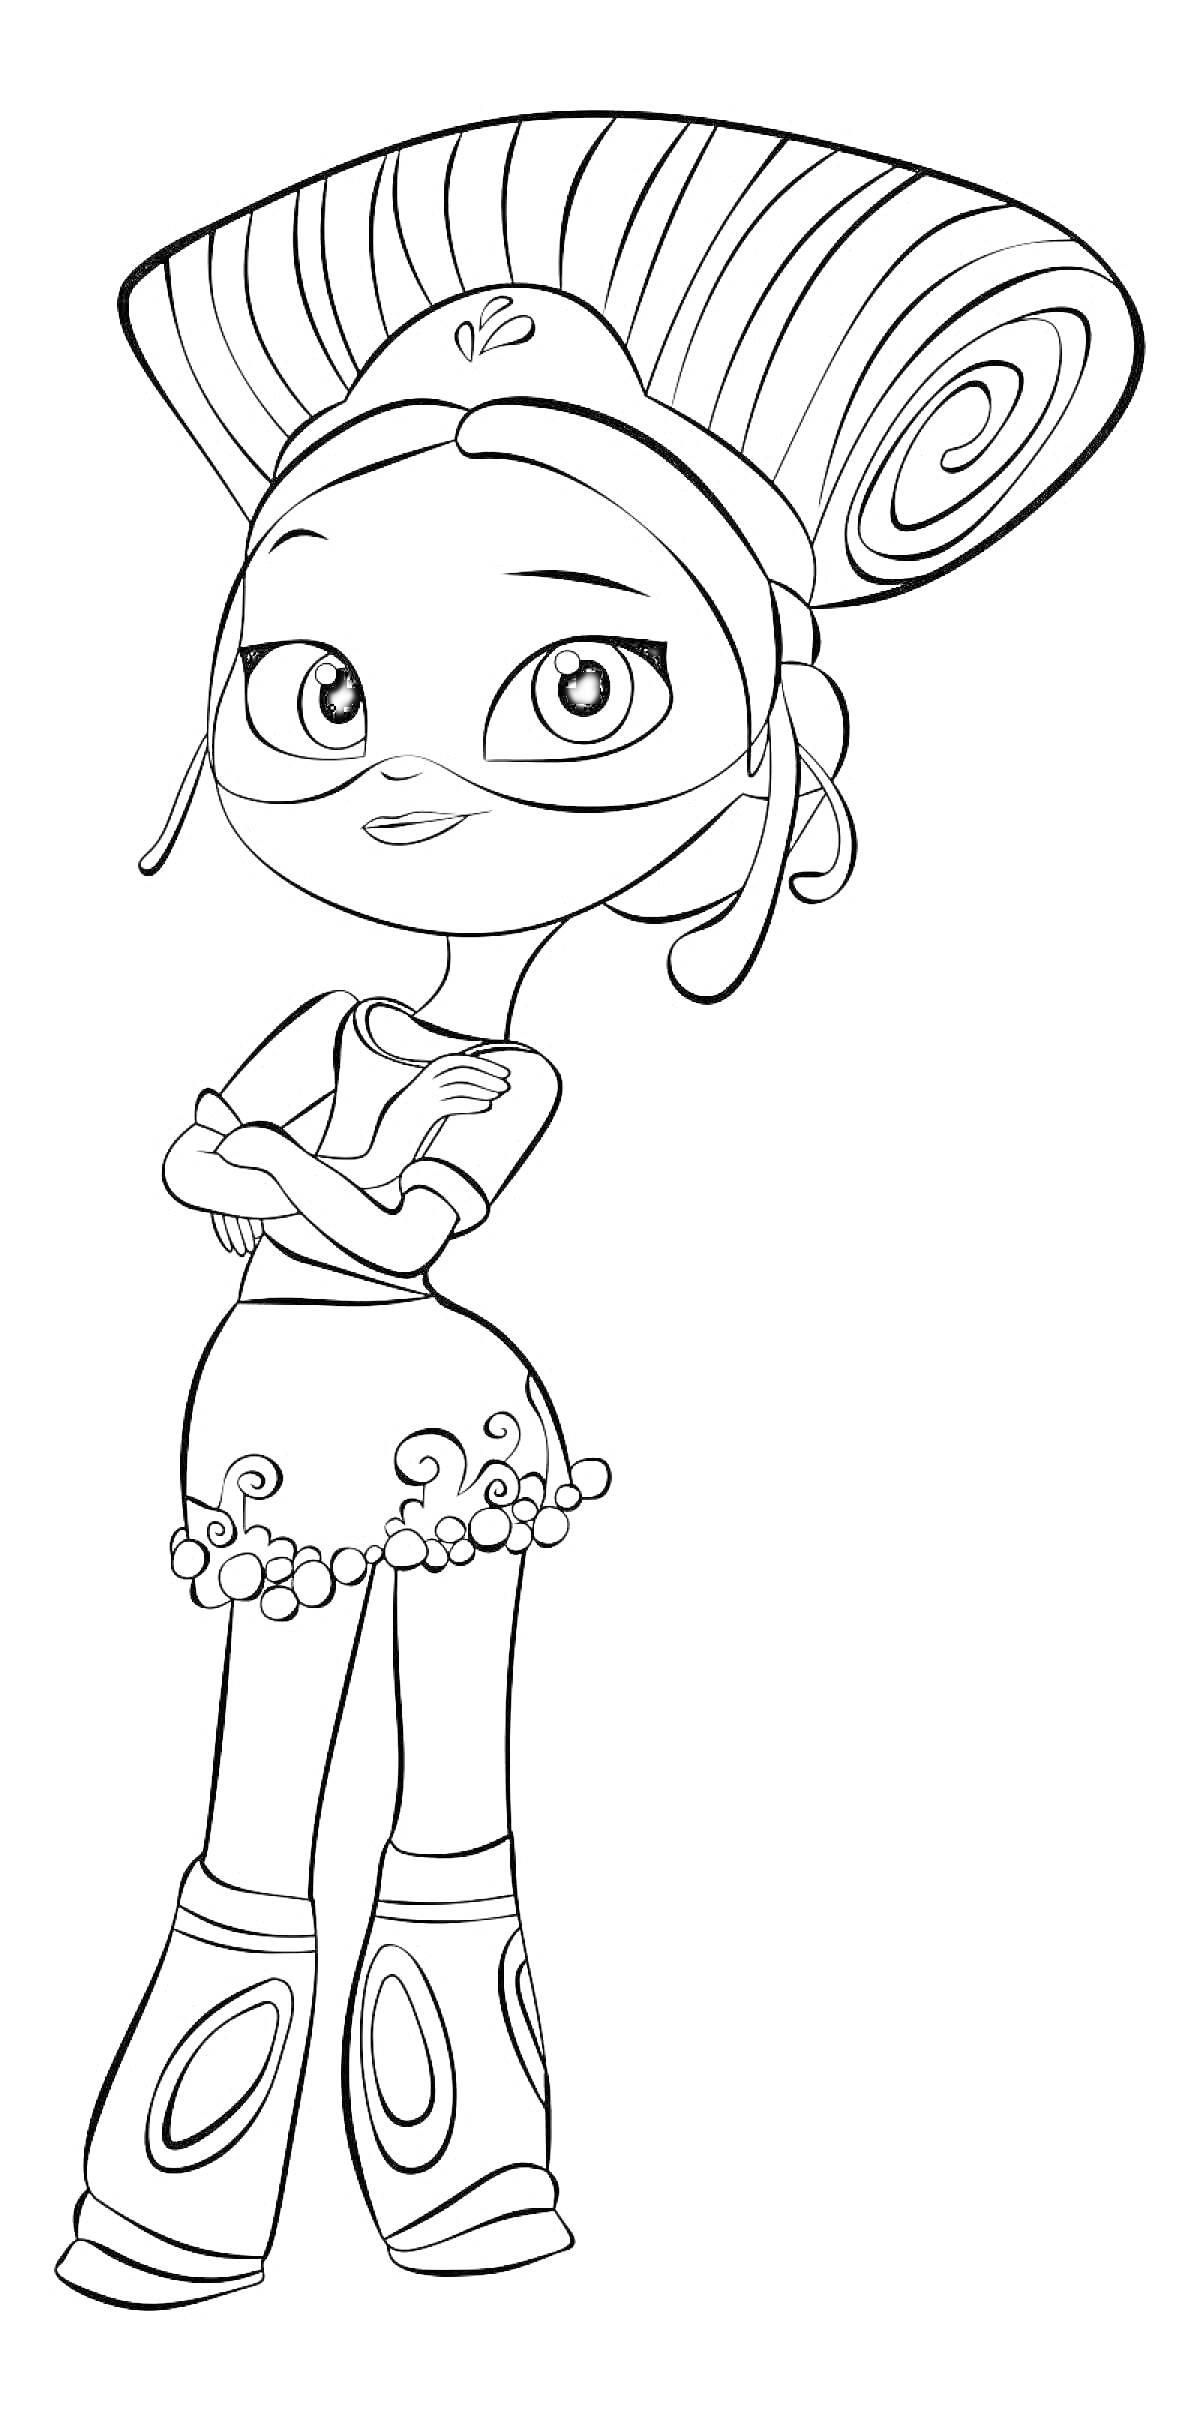 Раскраска Девочка с объемной прической в сказочном костюме, руки скрещены на груди, одета в юбку с узорами и модные сапоги